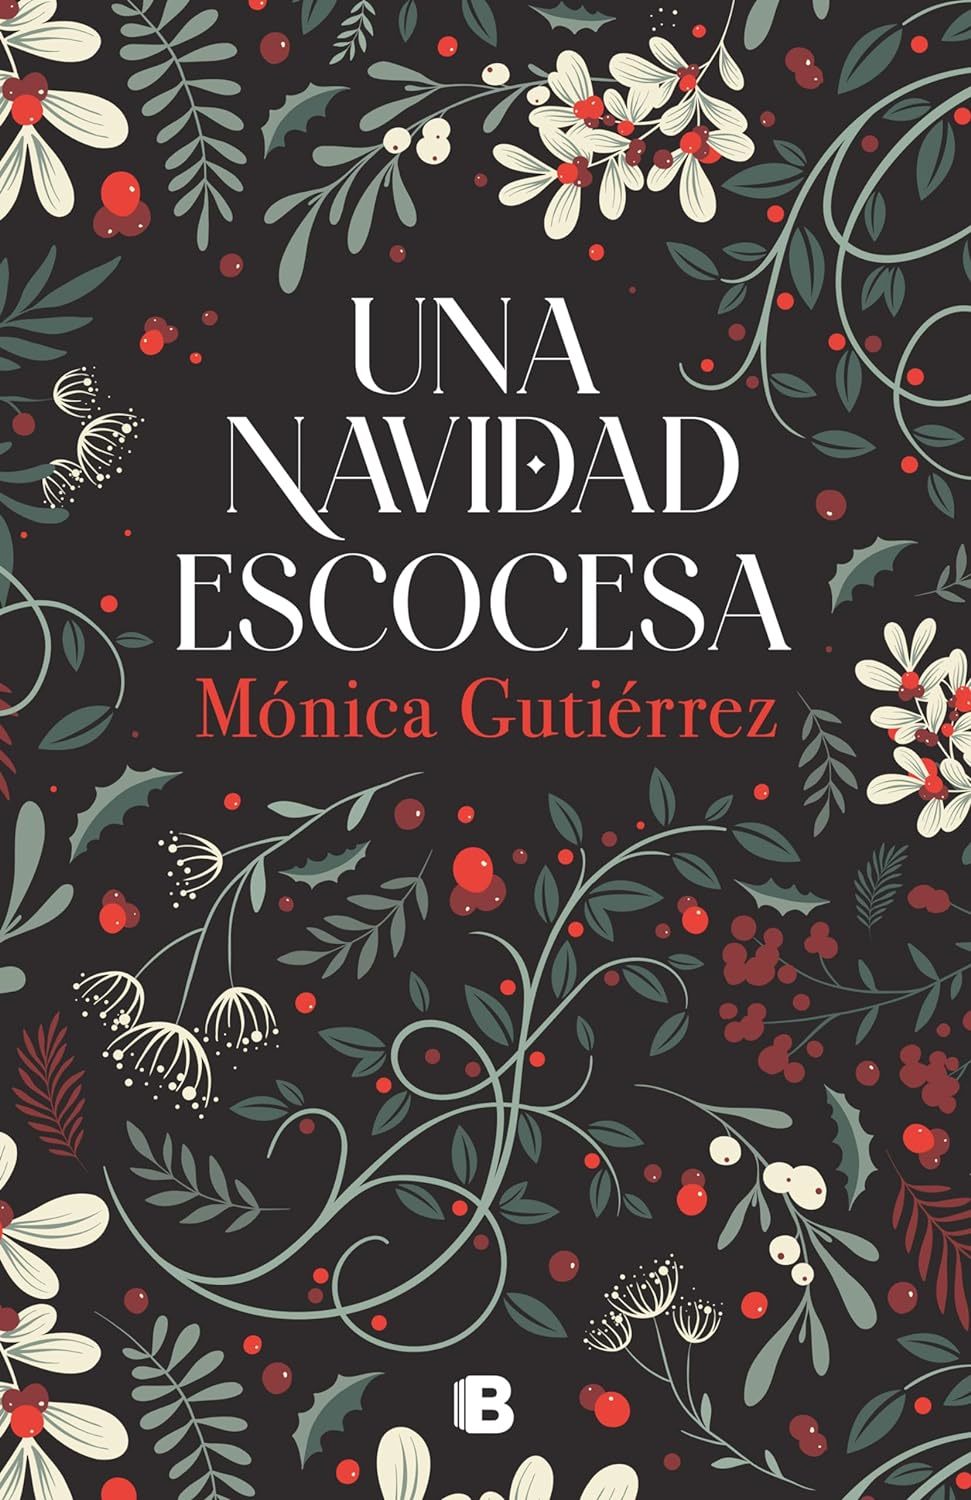 Una Navidad escocesa. Mónica Gutiérrez. Ediciones B. De venta en Amazon (19,85 euros).